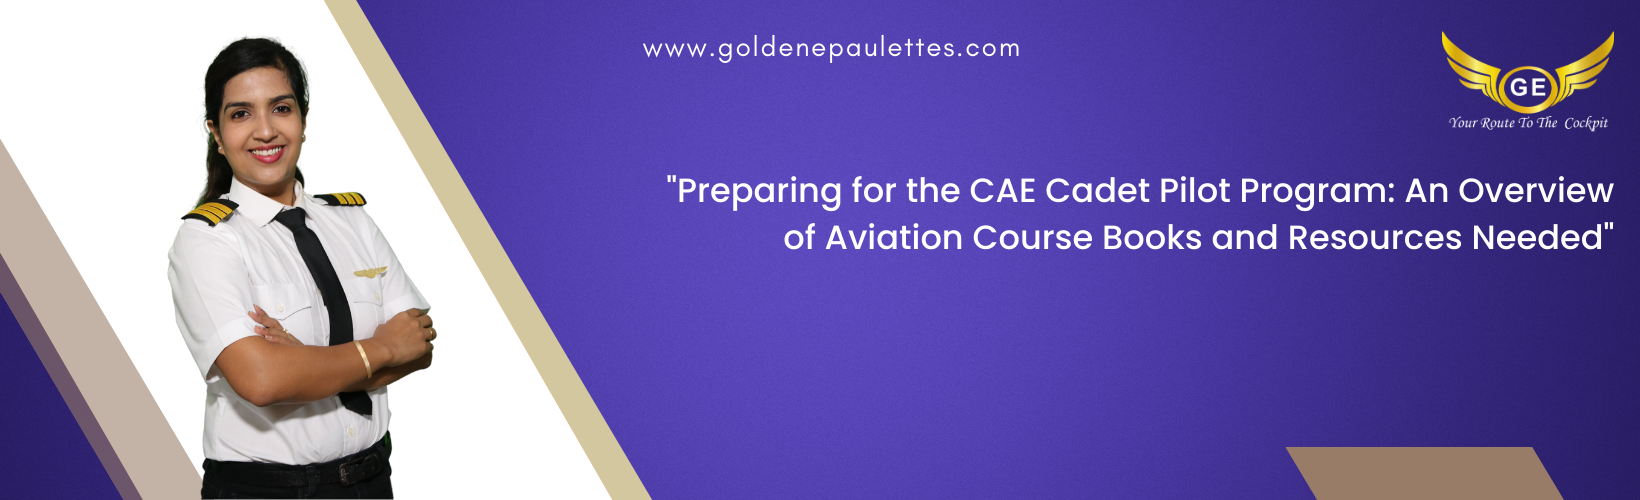 Aviation Course Books for the CAE Cadet Pilot Program